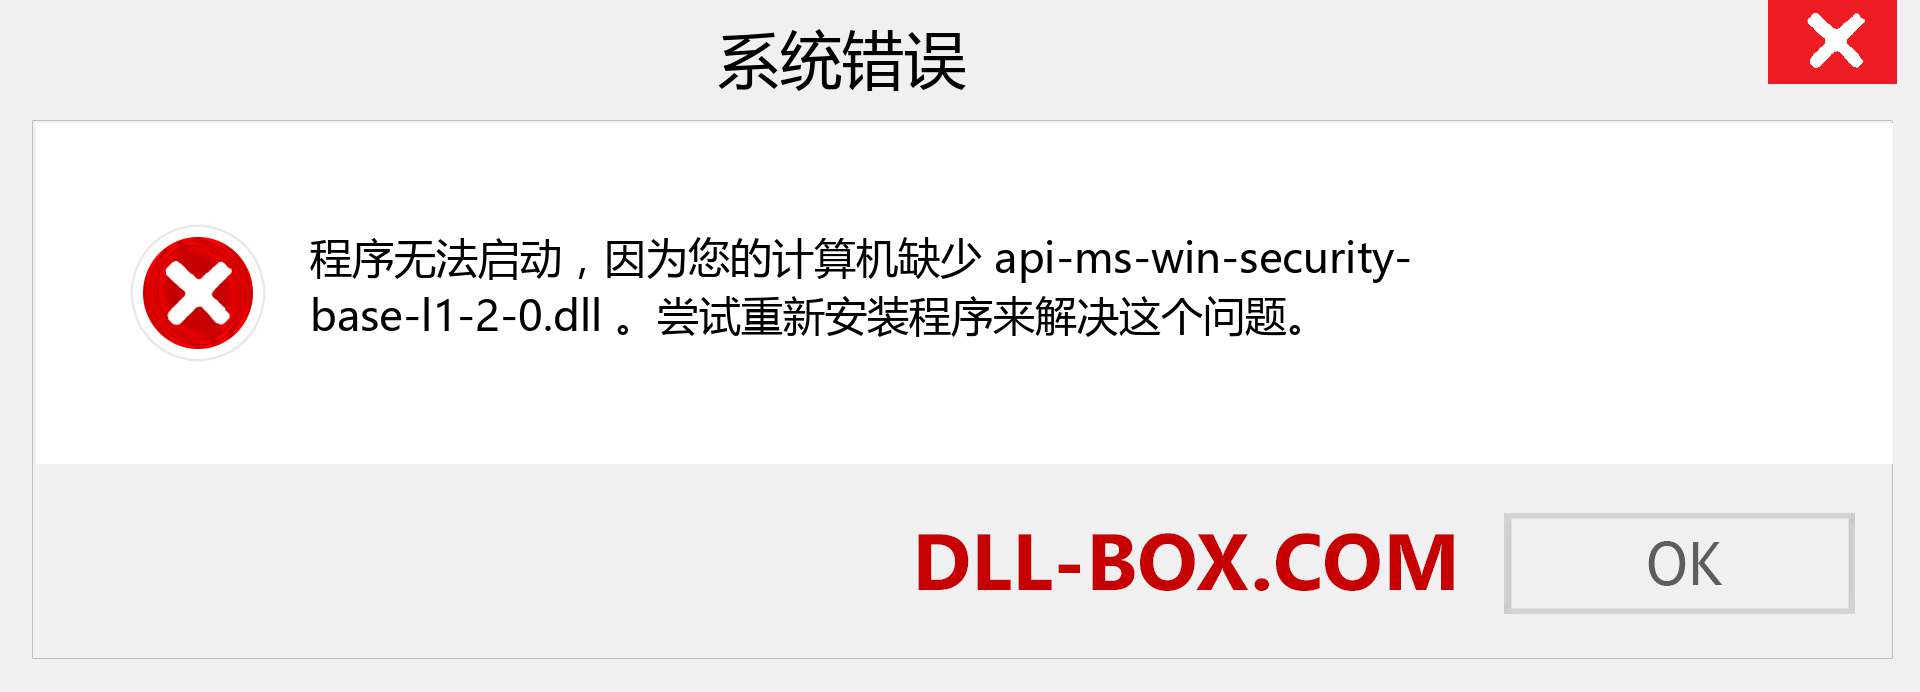 api-ms-win-security-base-l1-2-0.dll 文件丢失？。 适用于 Windows 7、8、10 的下载 - 修复 Windows、照片、图像上的 api-ms-win-security-base-l1-2-0 dll 丢失错误